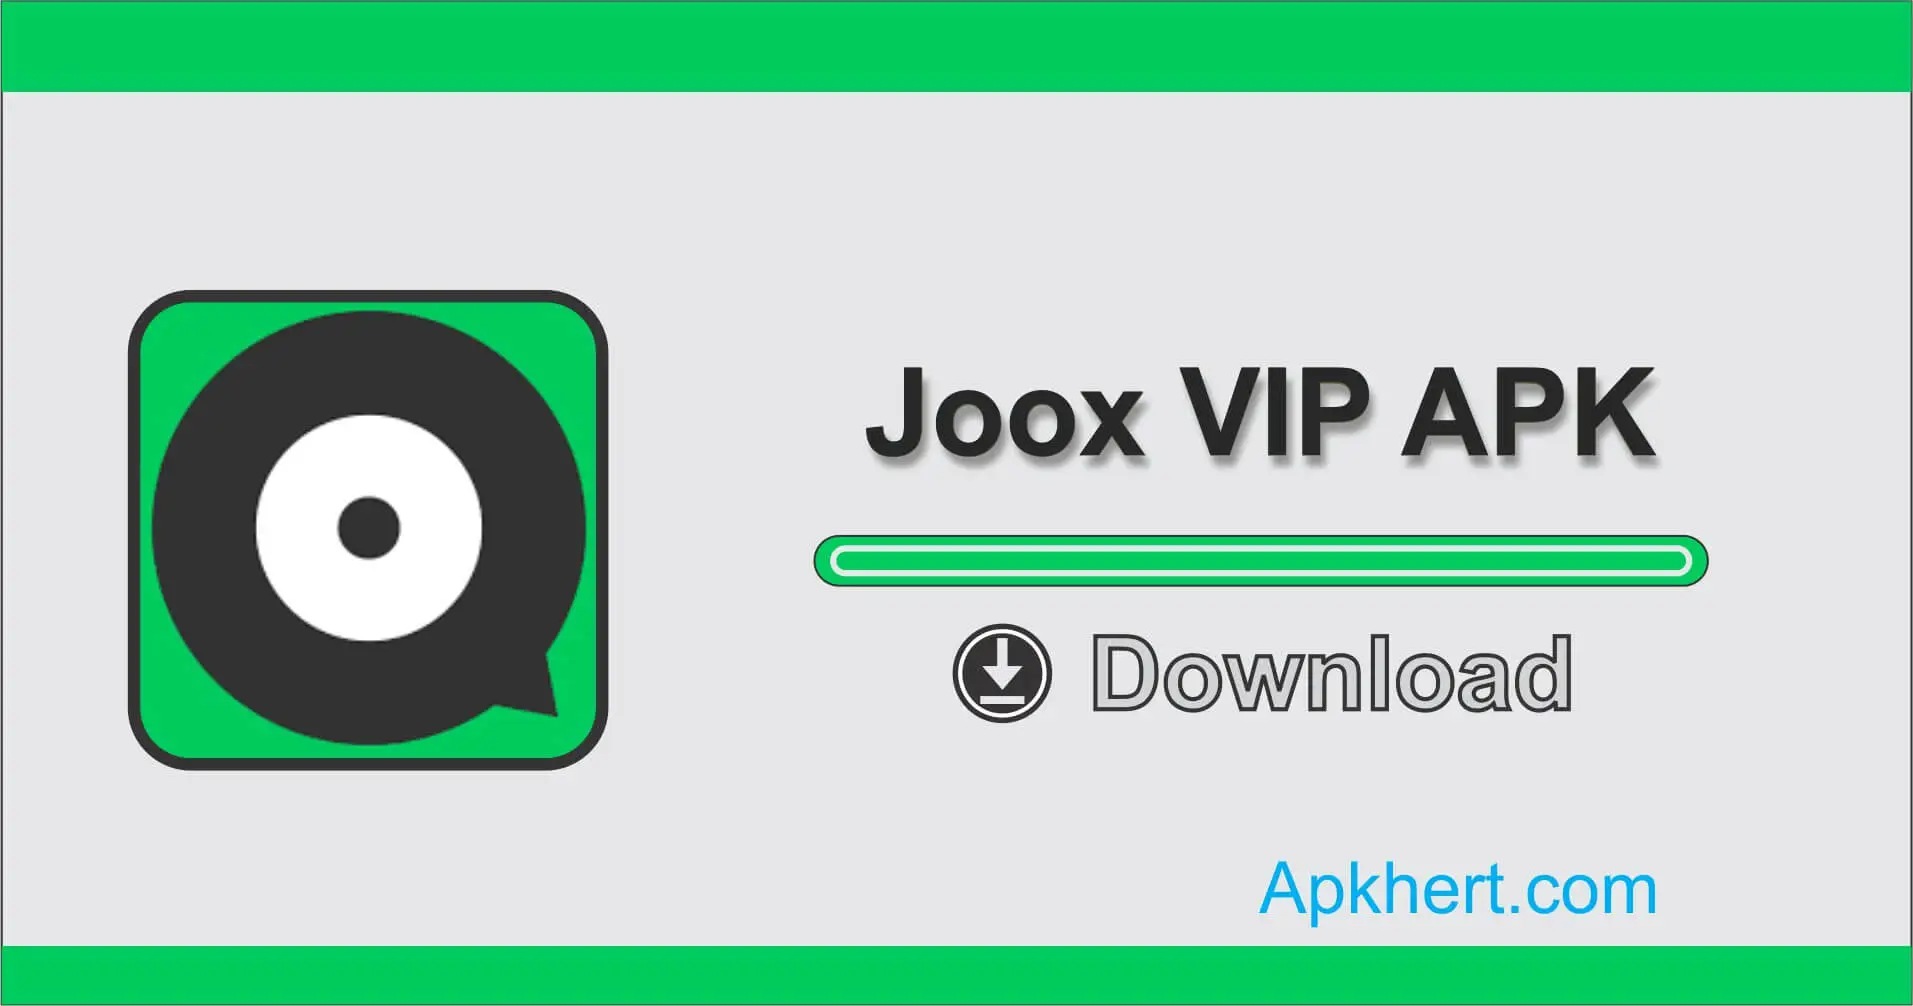 Joox VIP APK